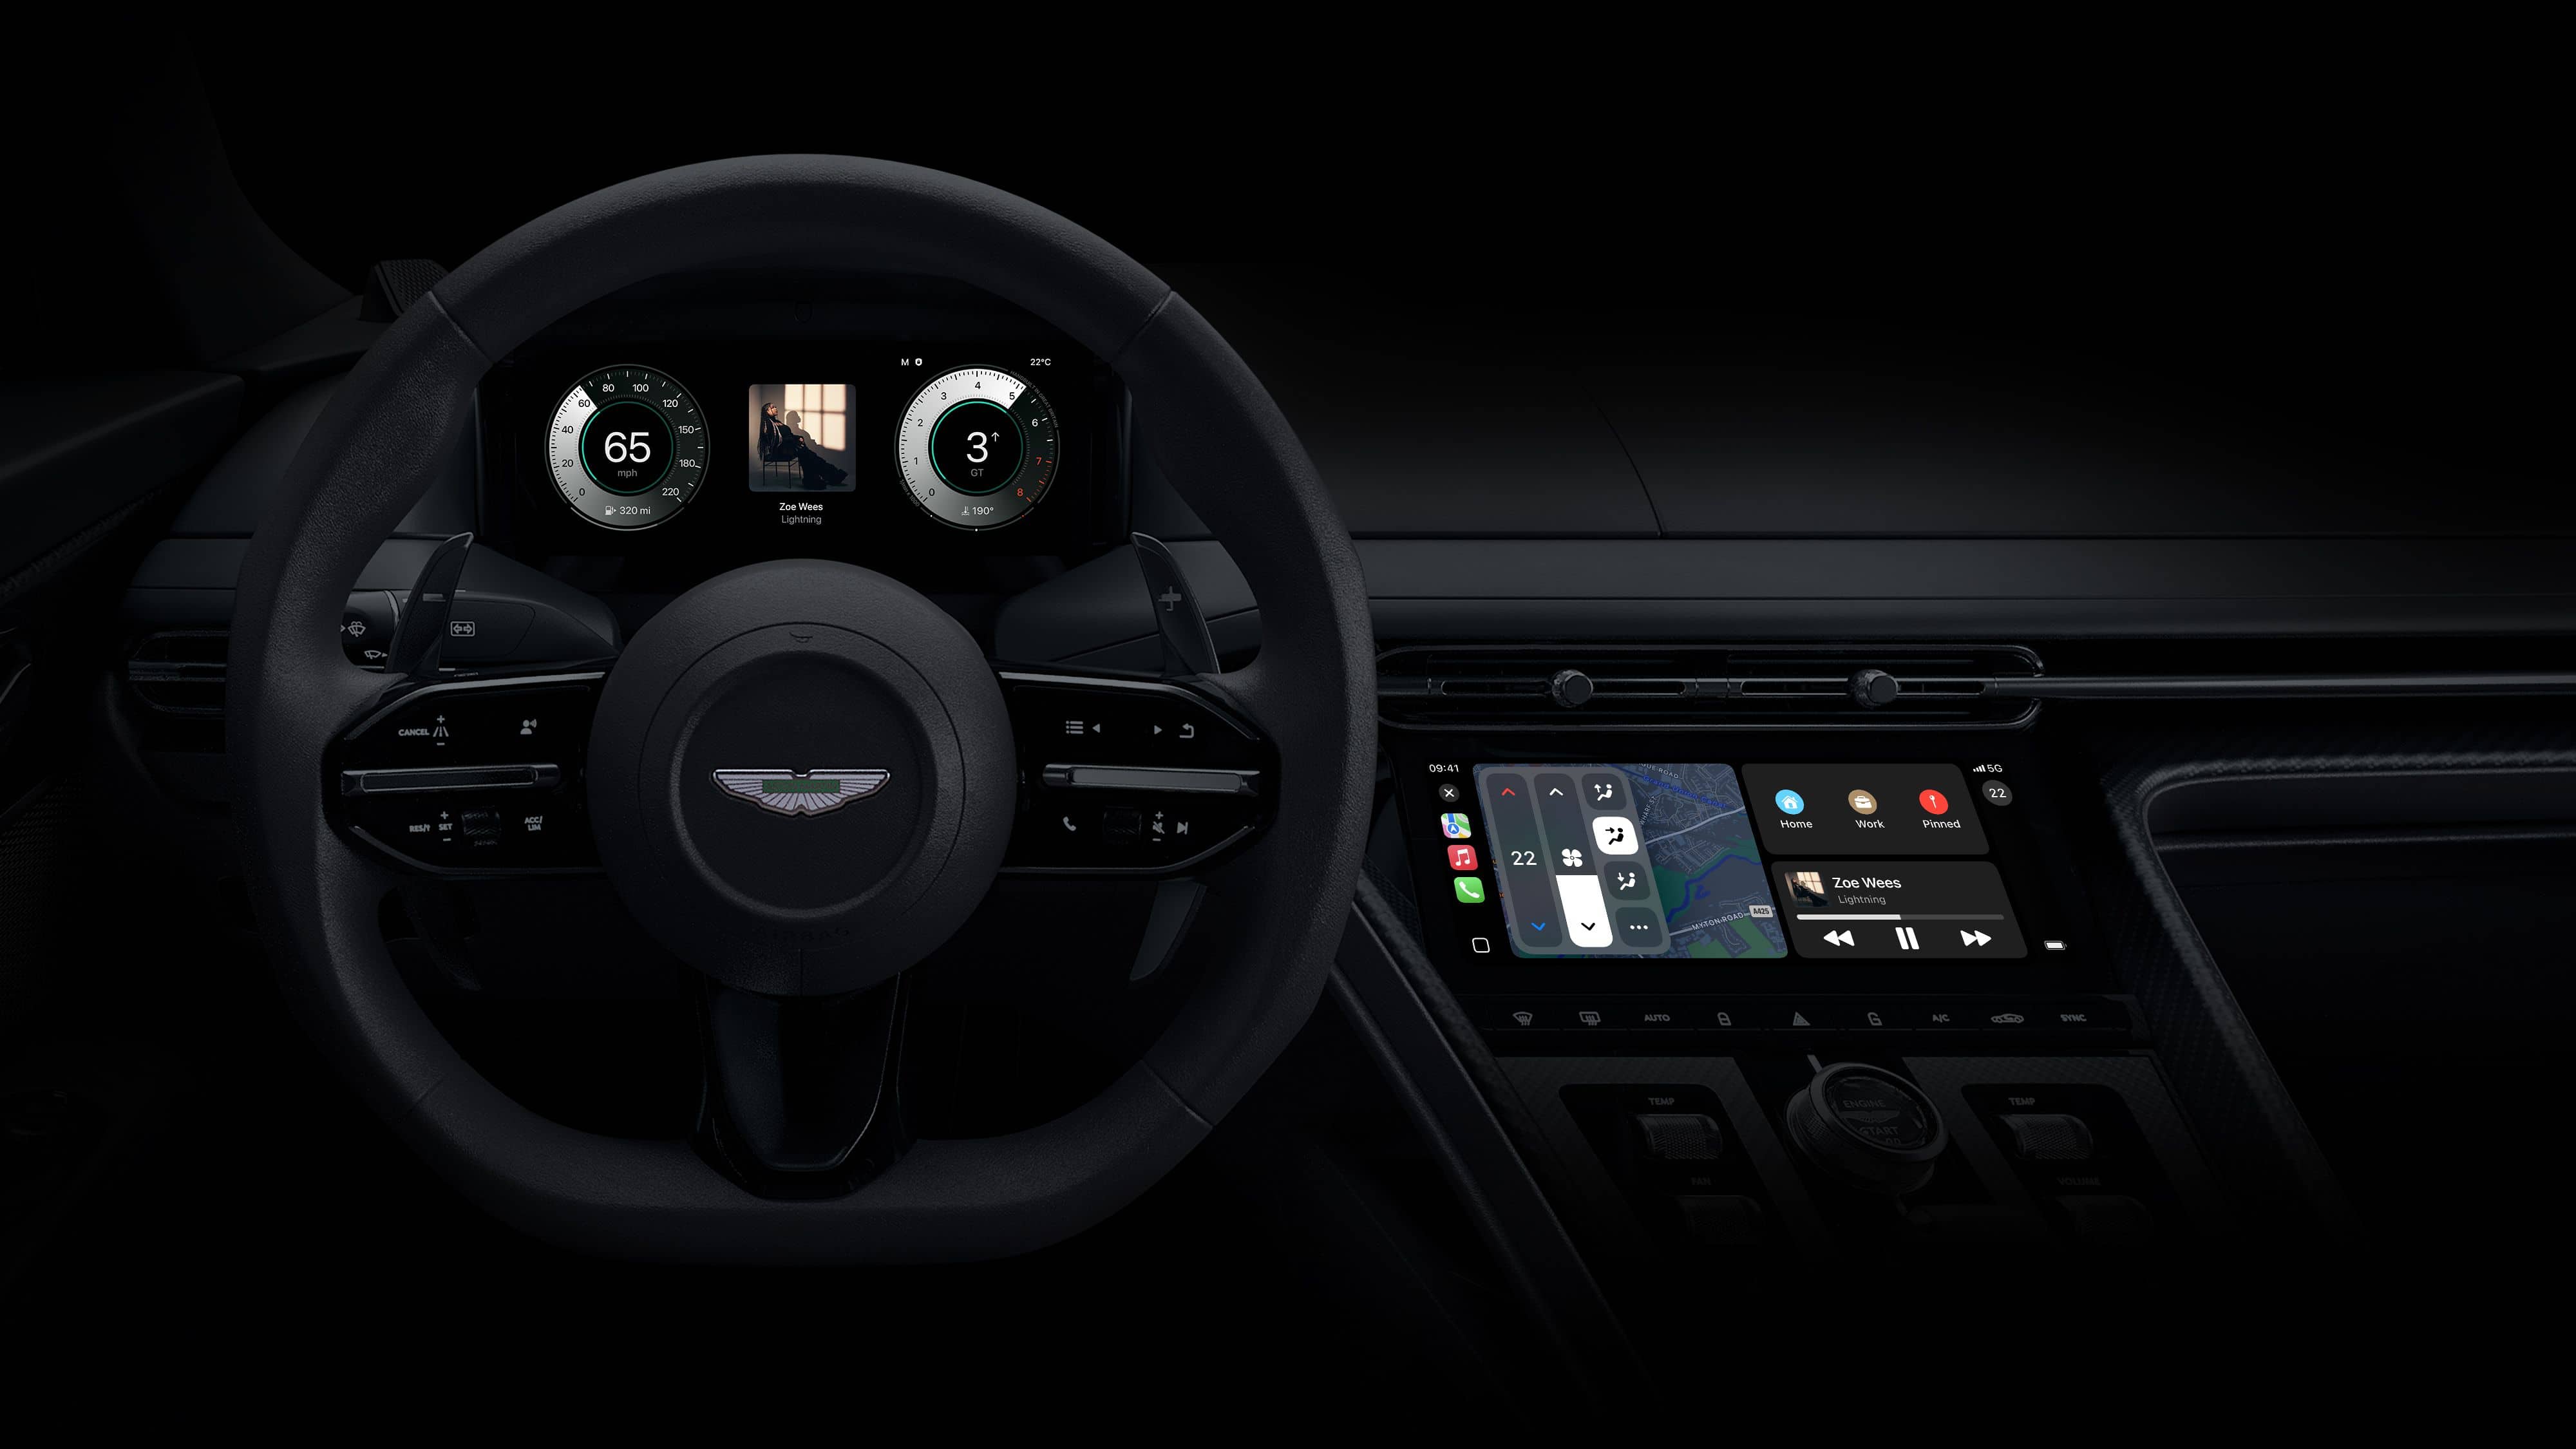 Aston Martin and Porsche preview their next-gen CarPlay designs coming in 2024